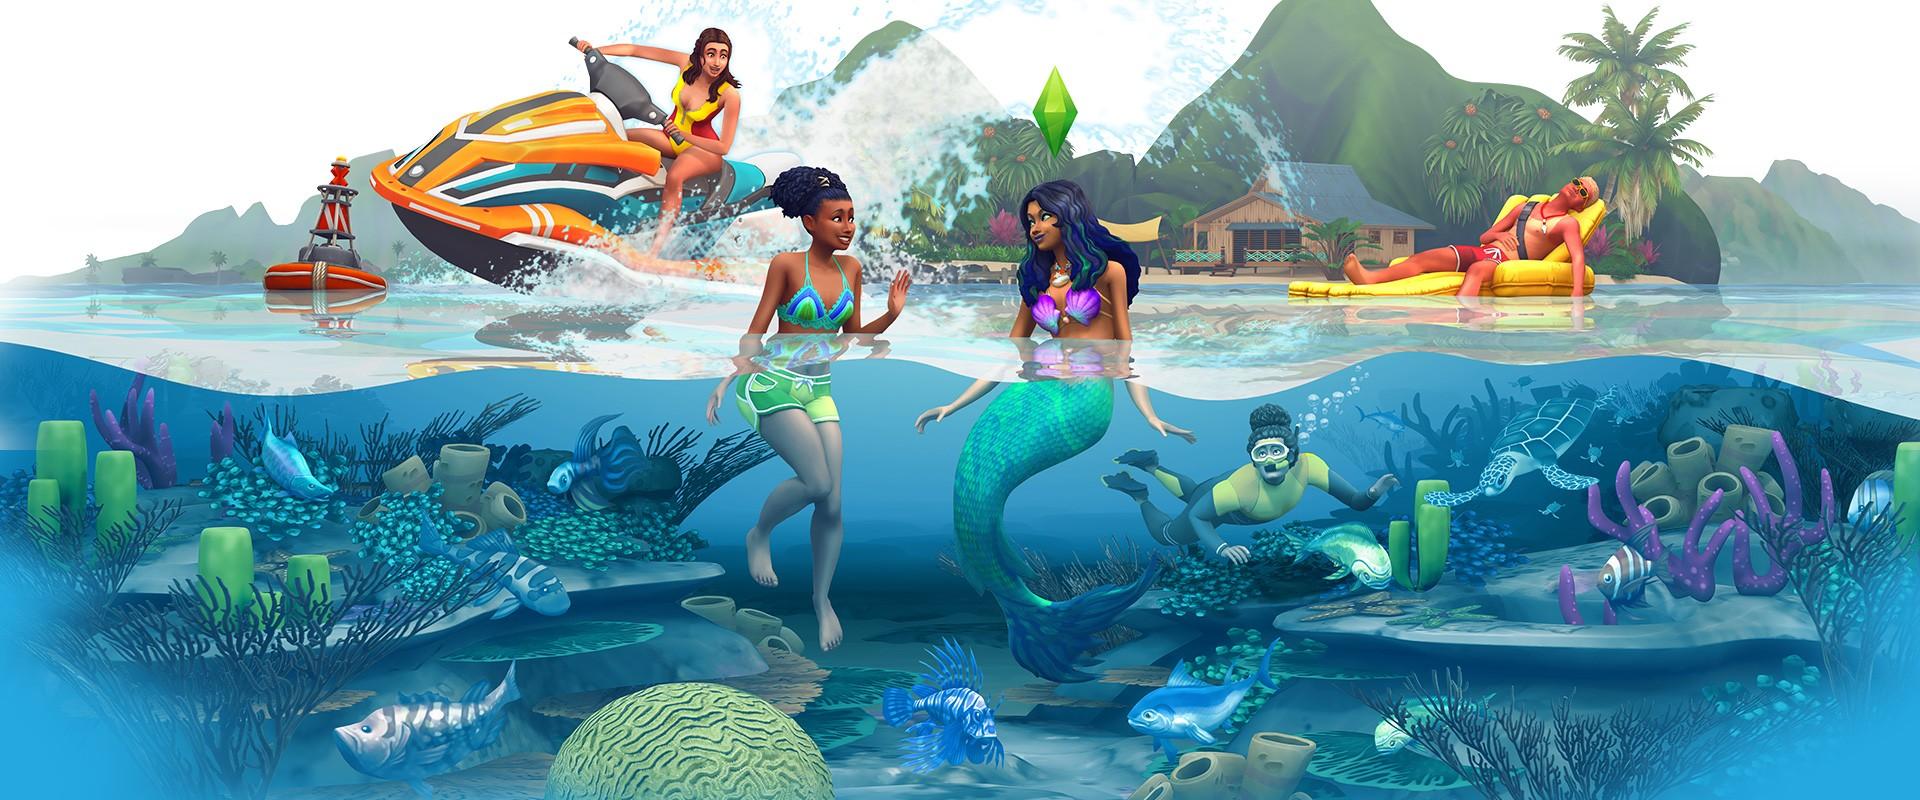 The Sims 4 | Ilhas Tropicais é a nova expansão do jogo